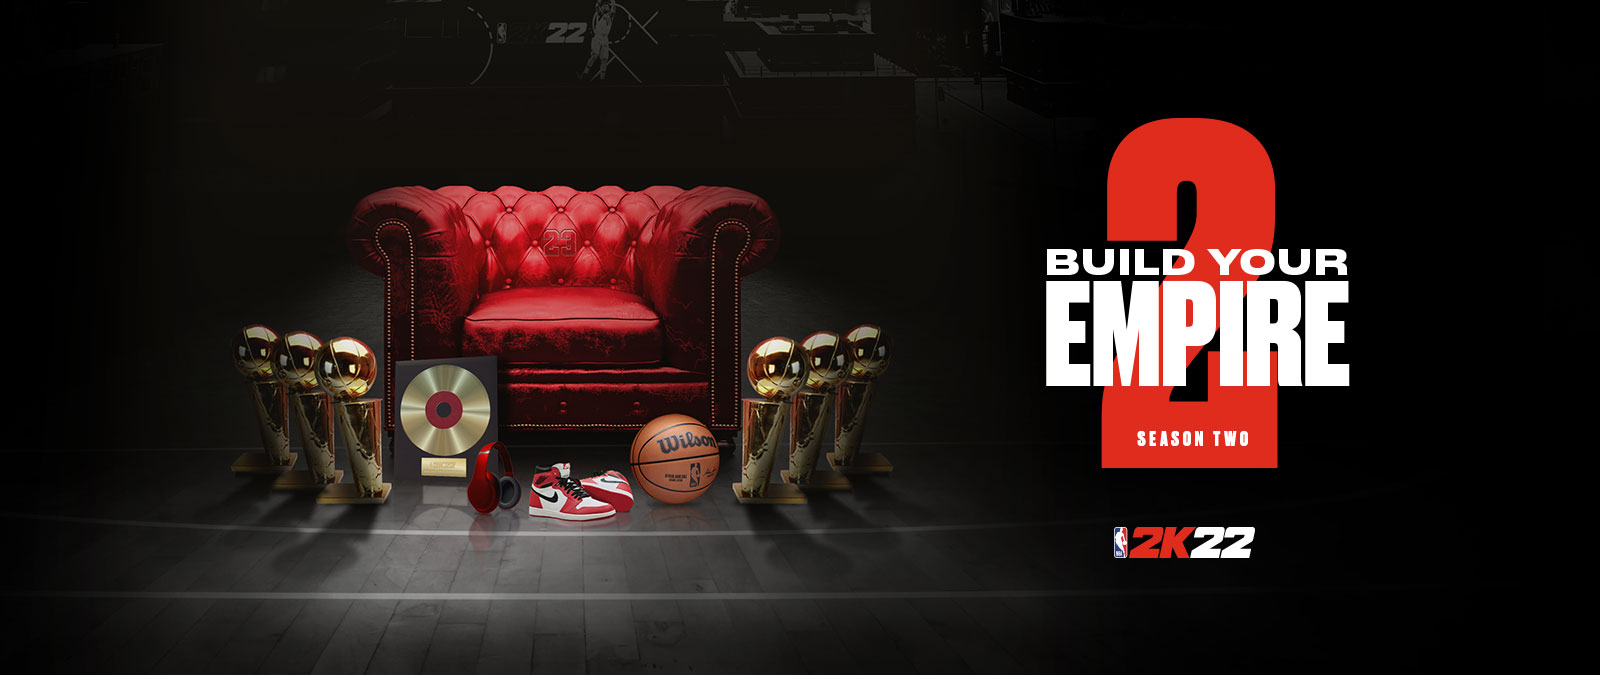 『NBA 2K22 - シーズン 2: 帝国を築く』: 赤いレザー チェアのまわりを複数のトロフィーが取り囲んでいる。